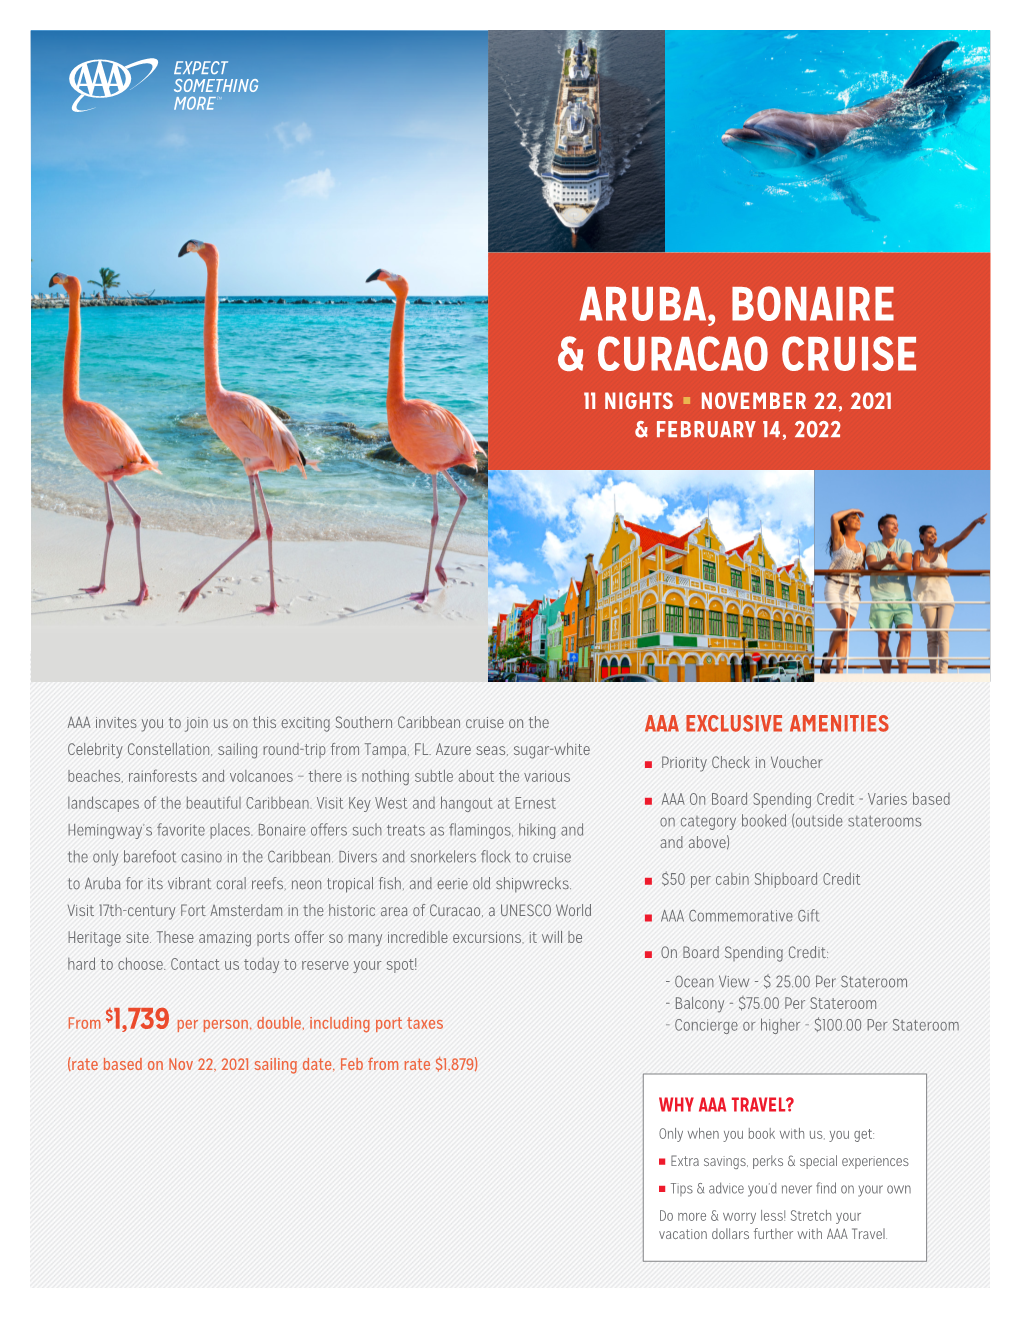 Aruba, Bonaire & Curacao Cruise